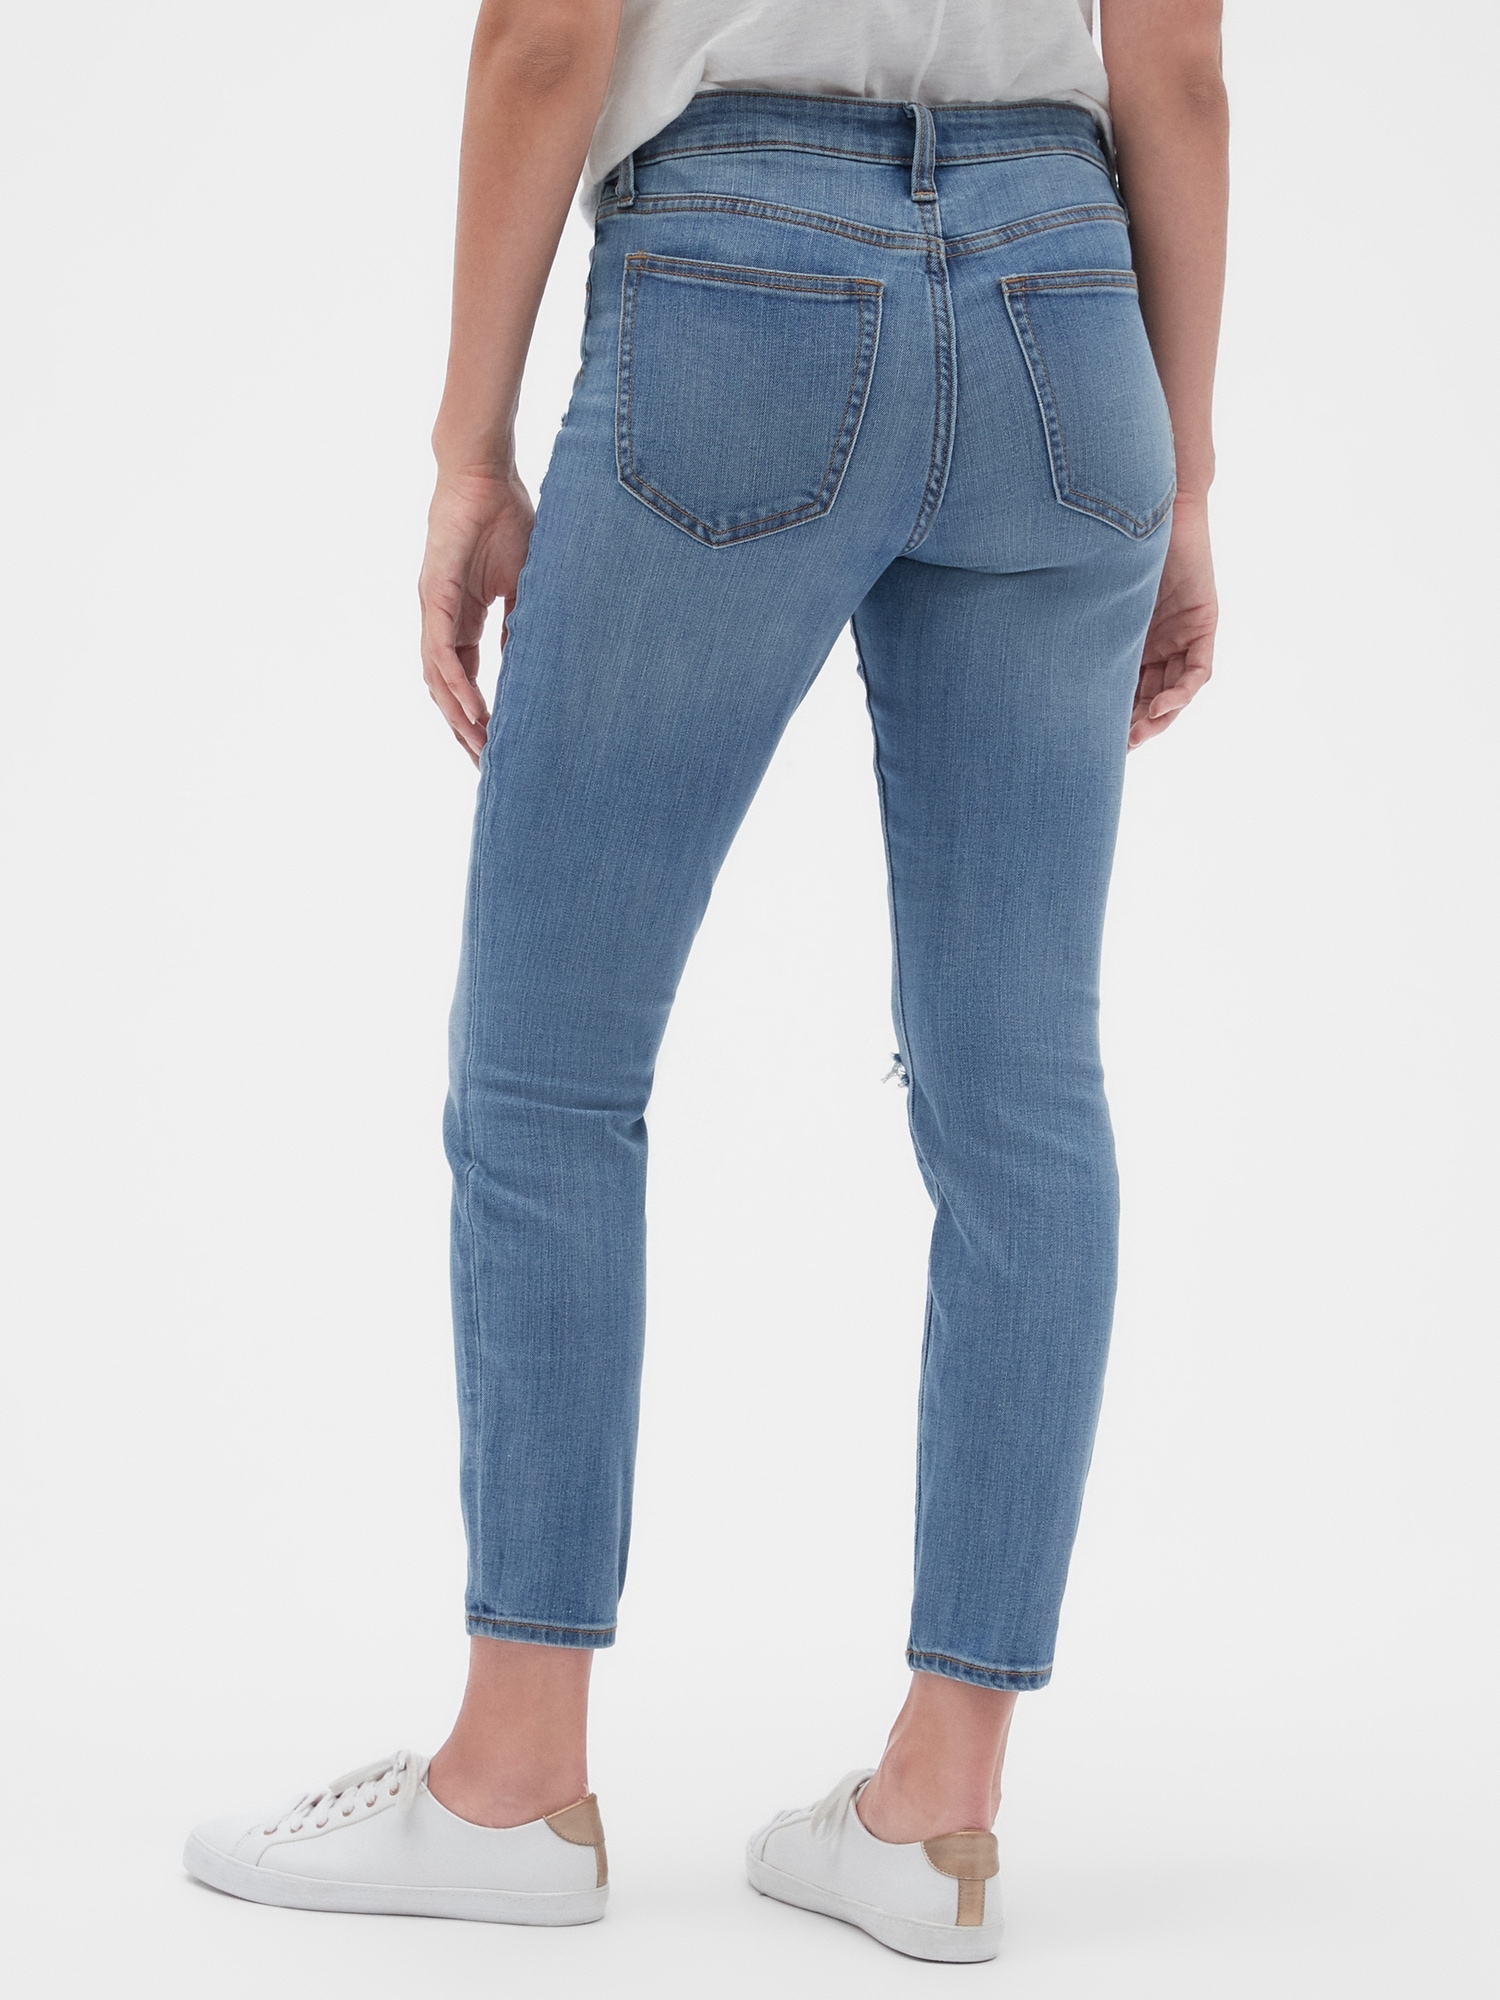 gap legging skimmer jeans